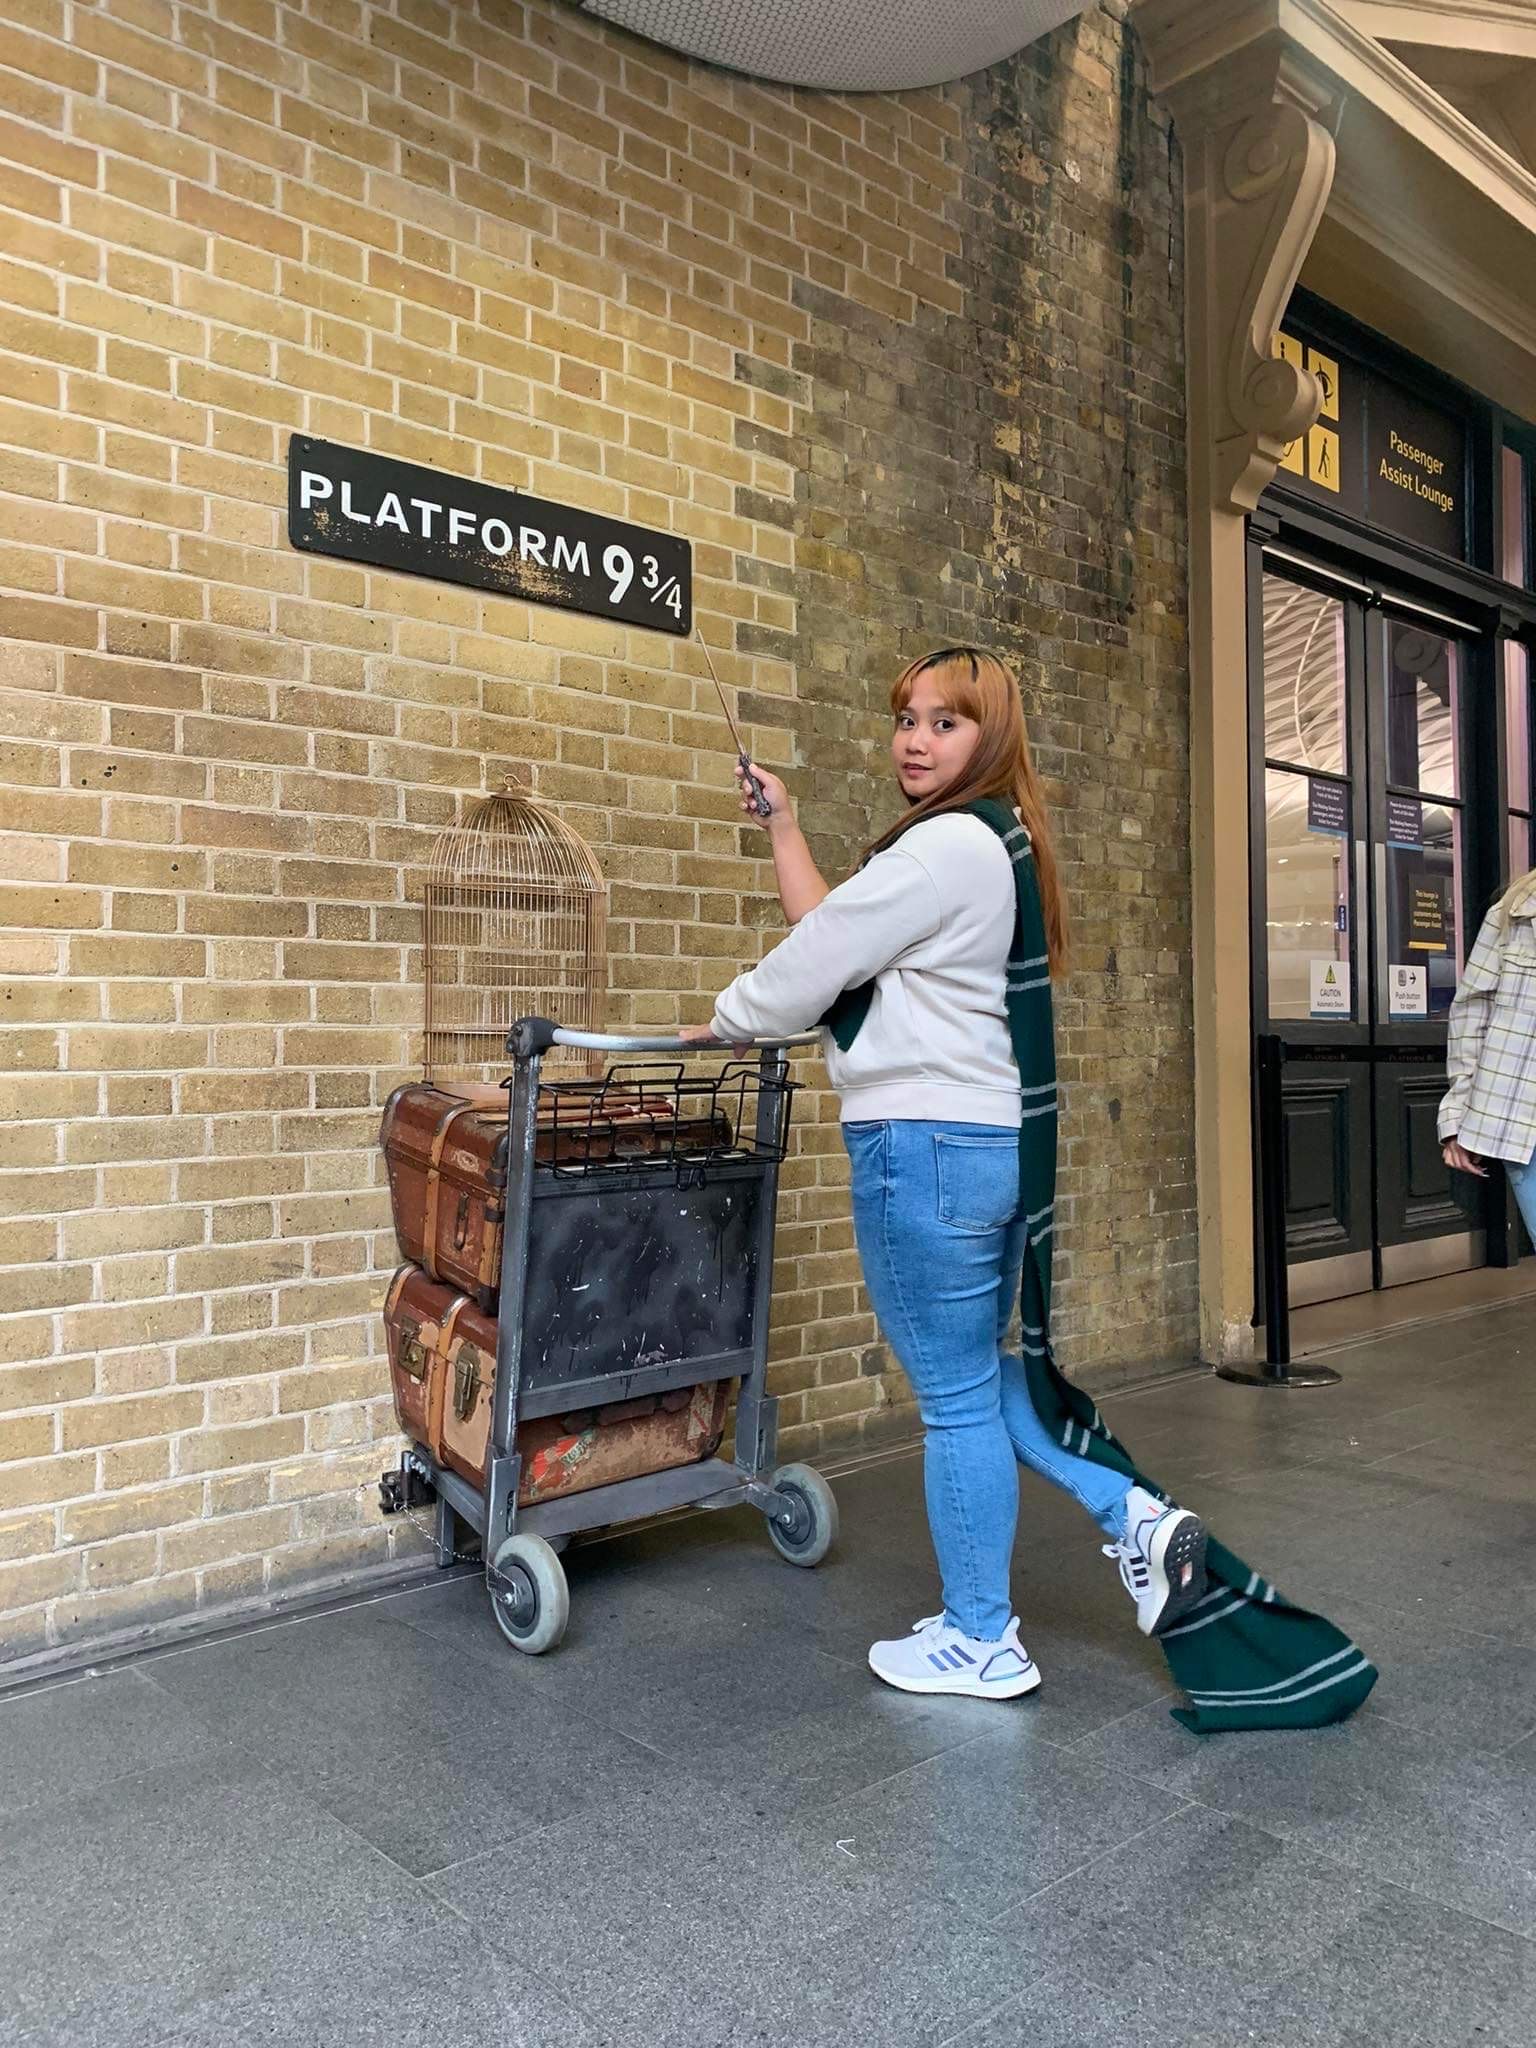 Platform 3/4 Harry Potter London Be Carol